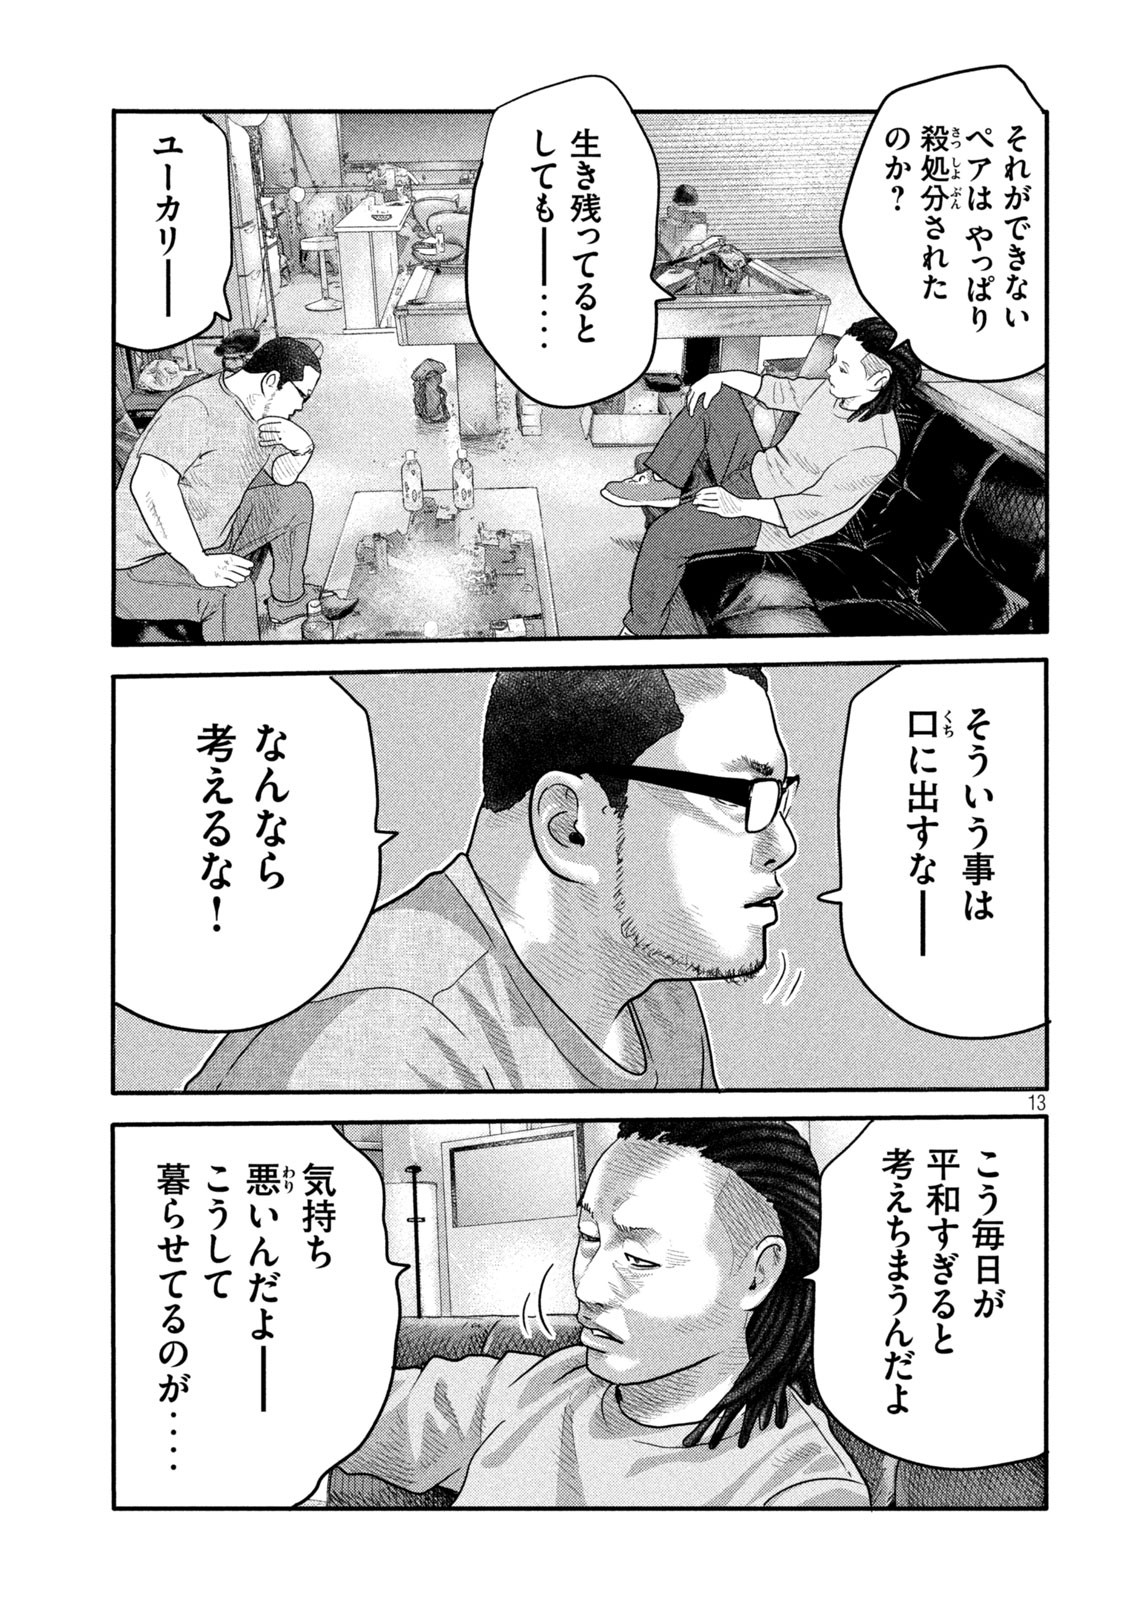 ザ・ファブル The Second Contact 第2話 - Page 13